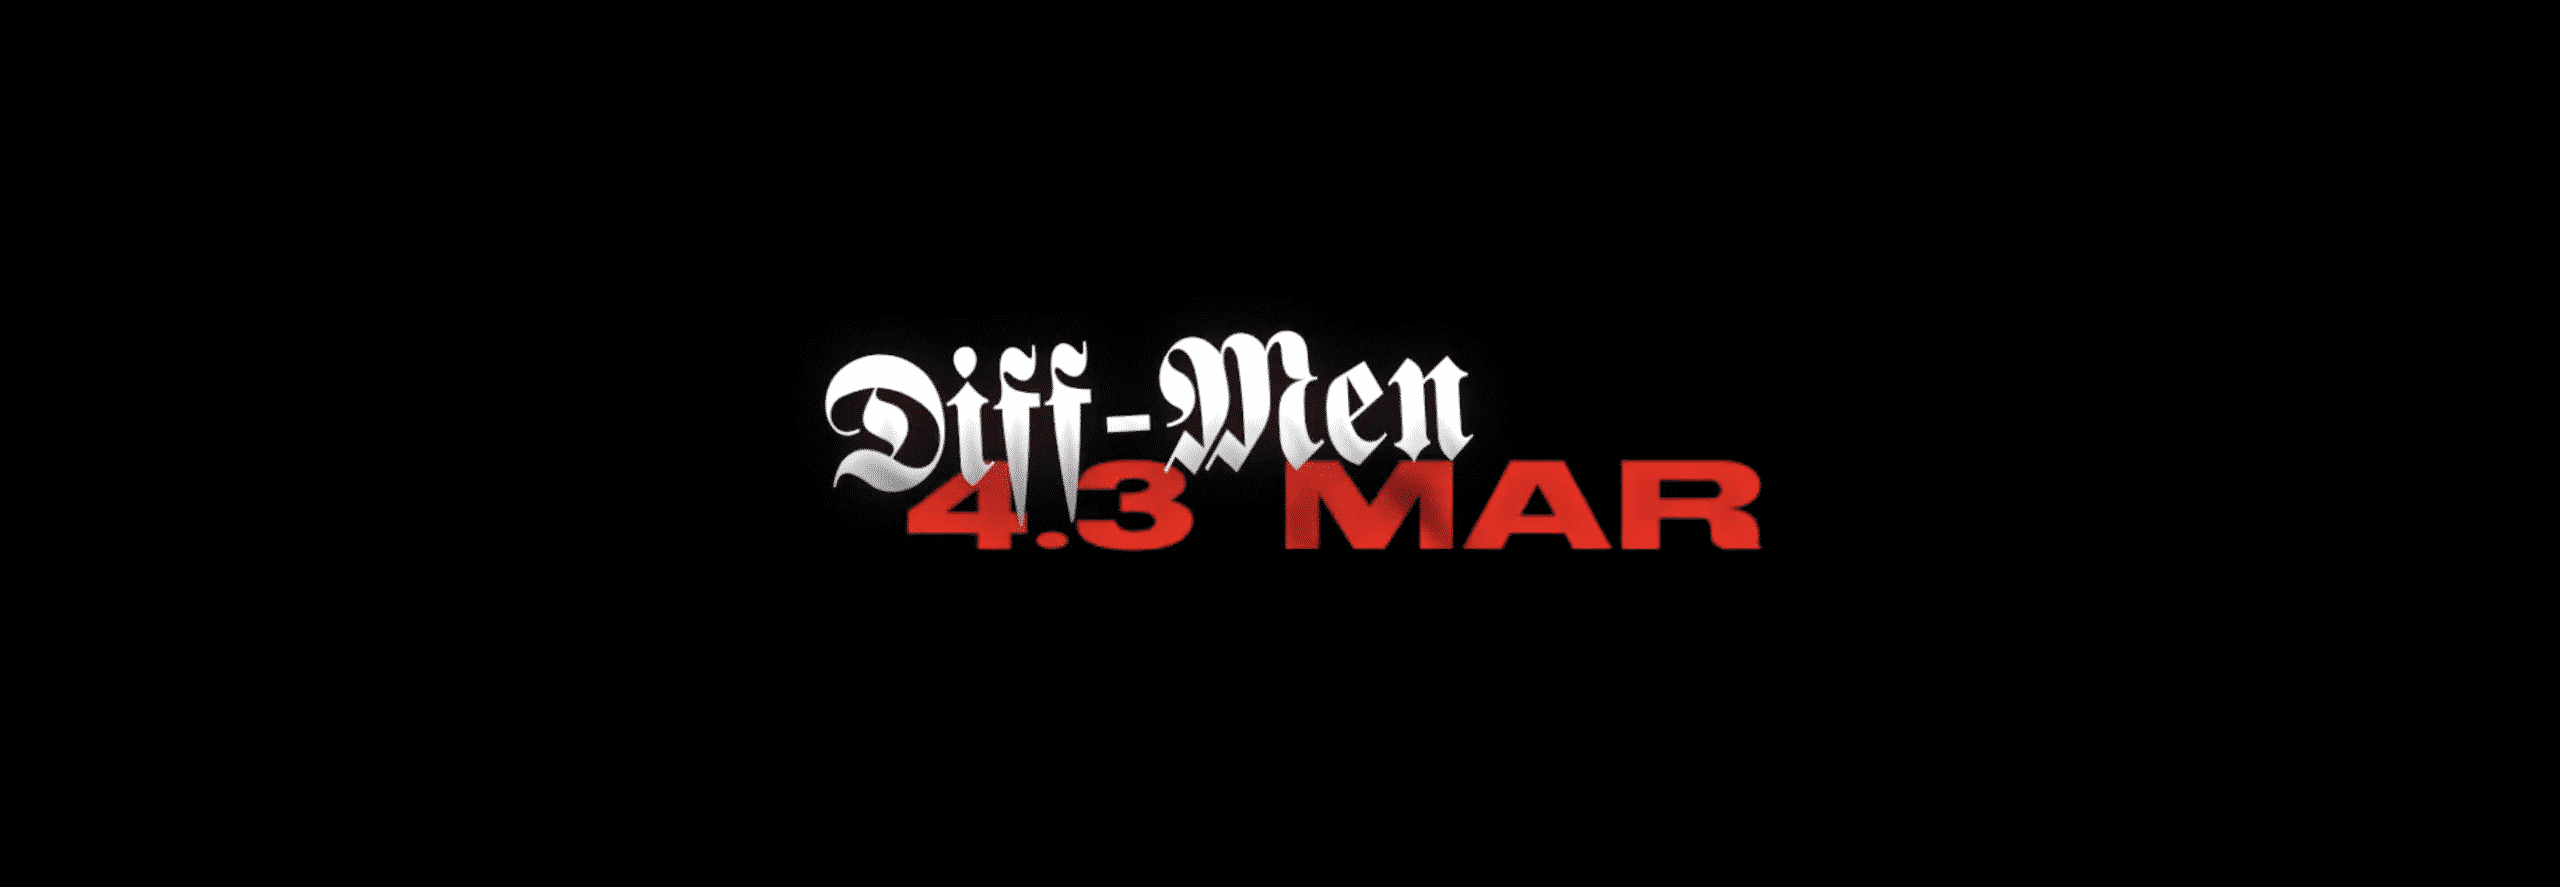 Diff-Men représente fièrement le "43Mares"